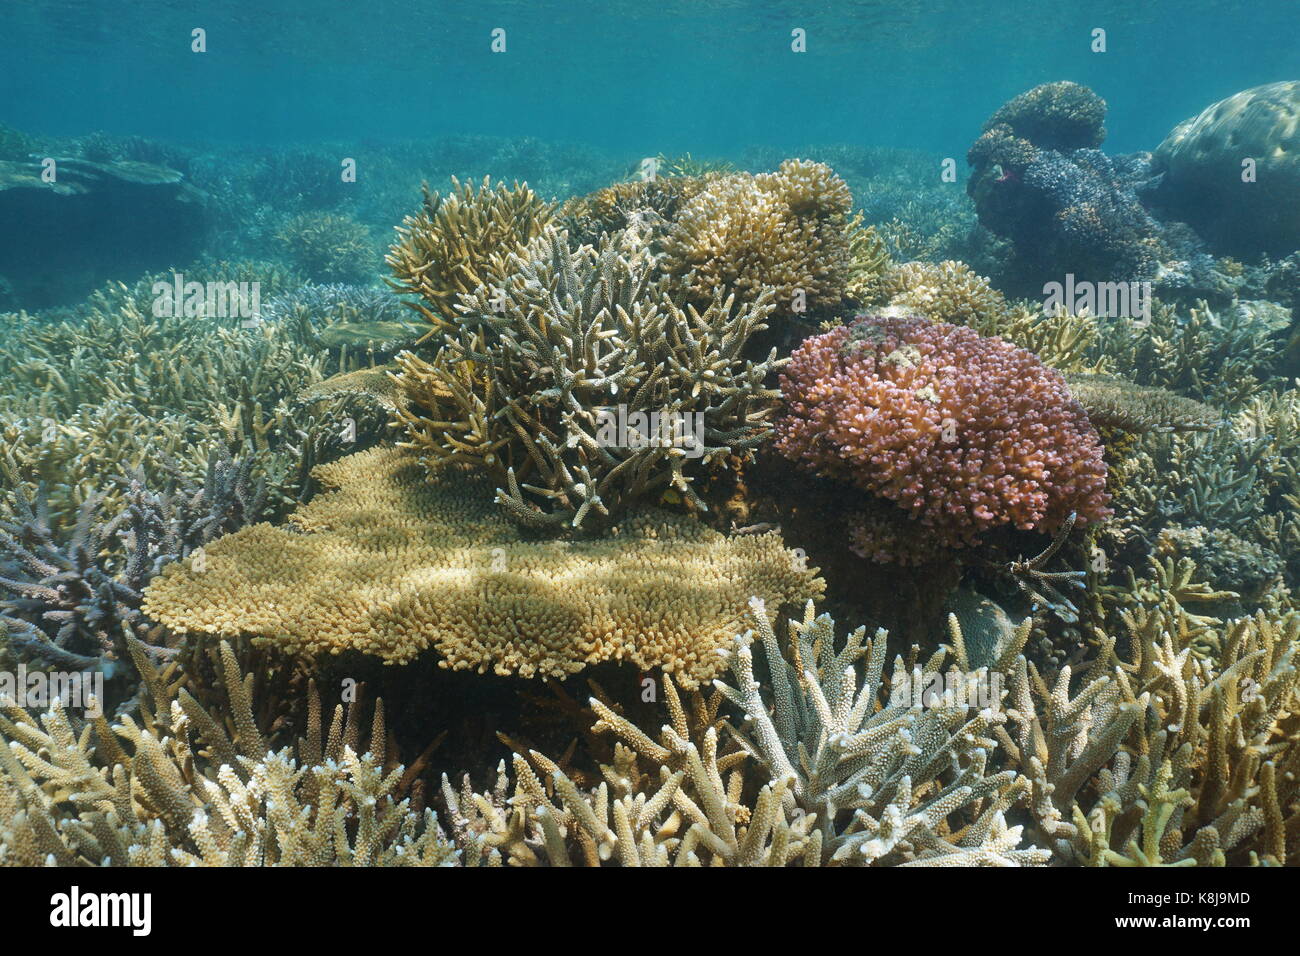 Oceano Pacifico del sud immacolata barriera corallina sott'acqua nella laguna di grande terre Island in Nuova Caledonia, Oceania Foto Stock